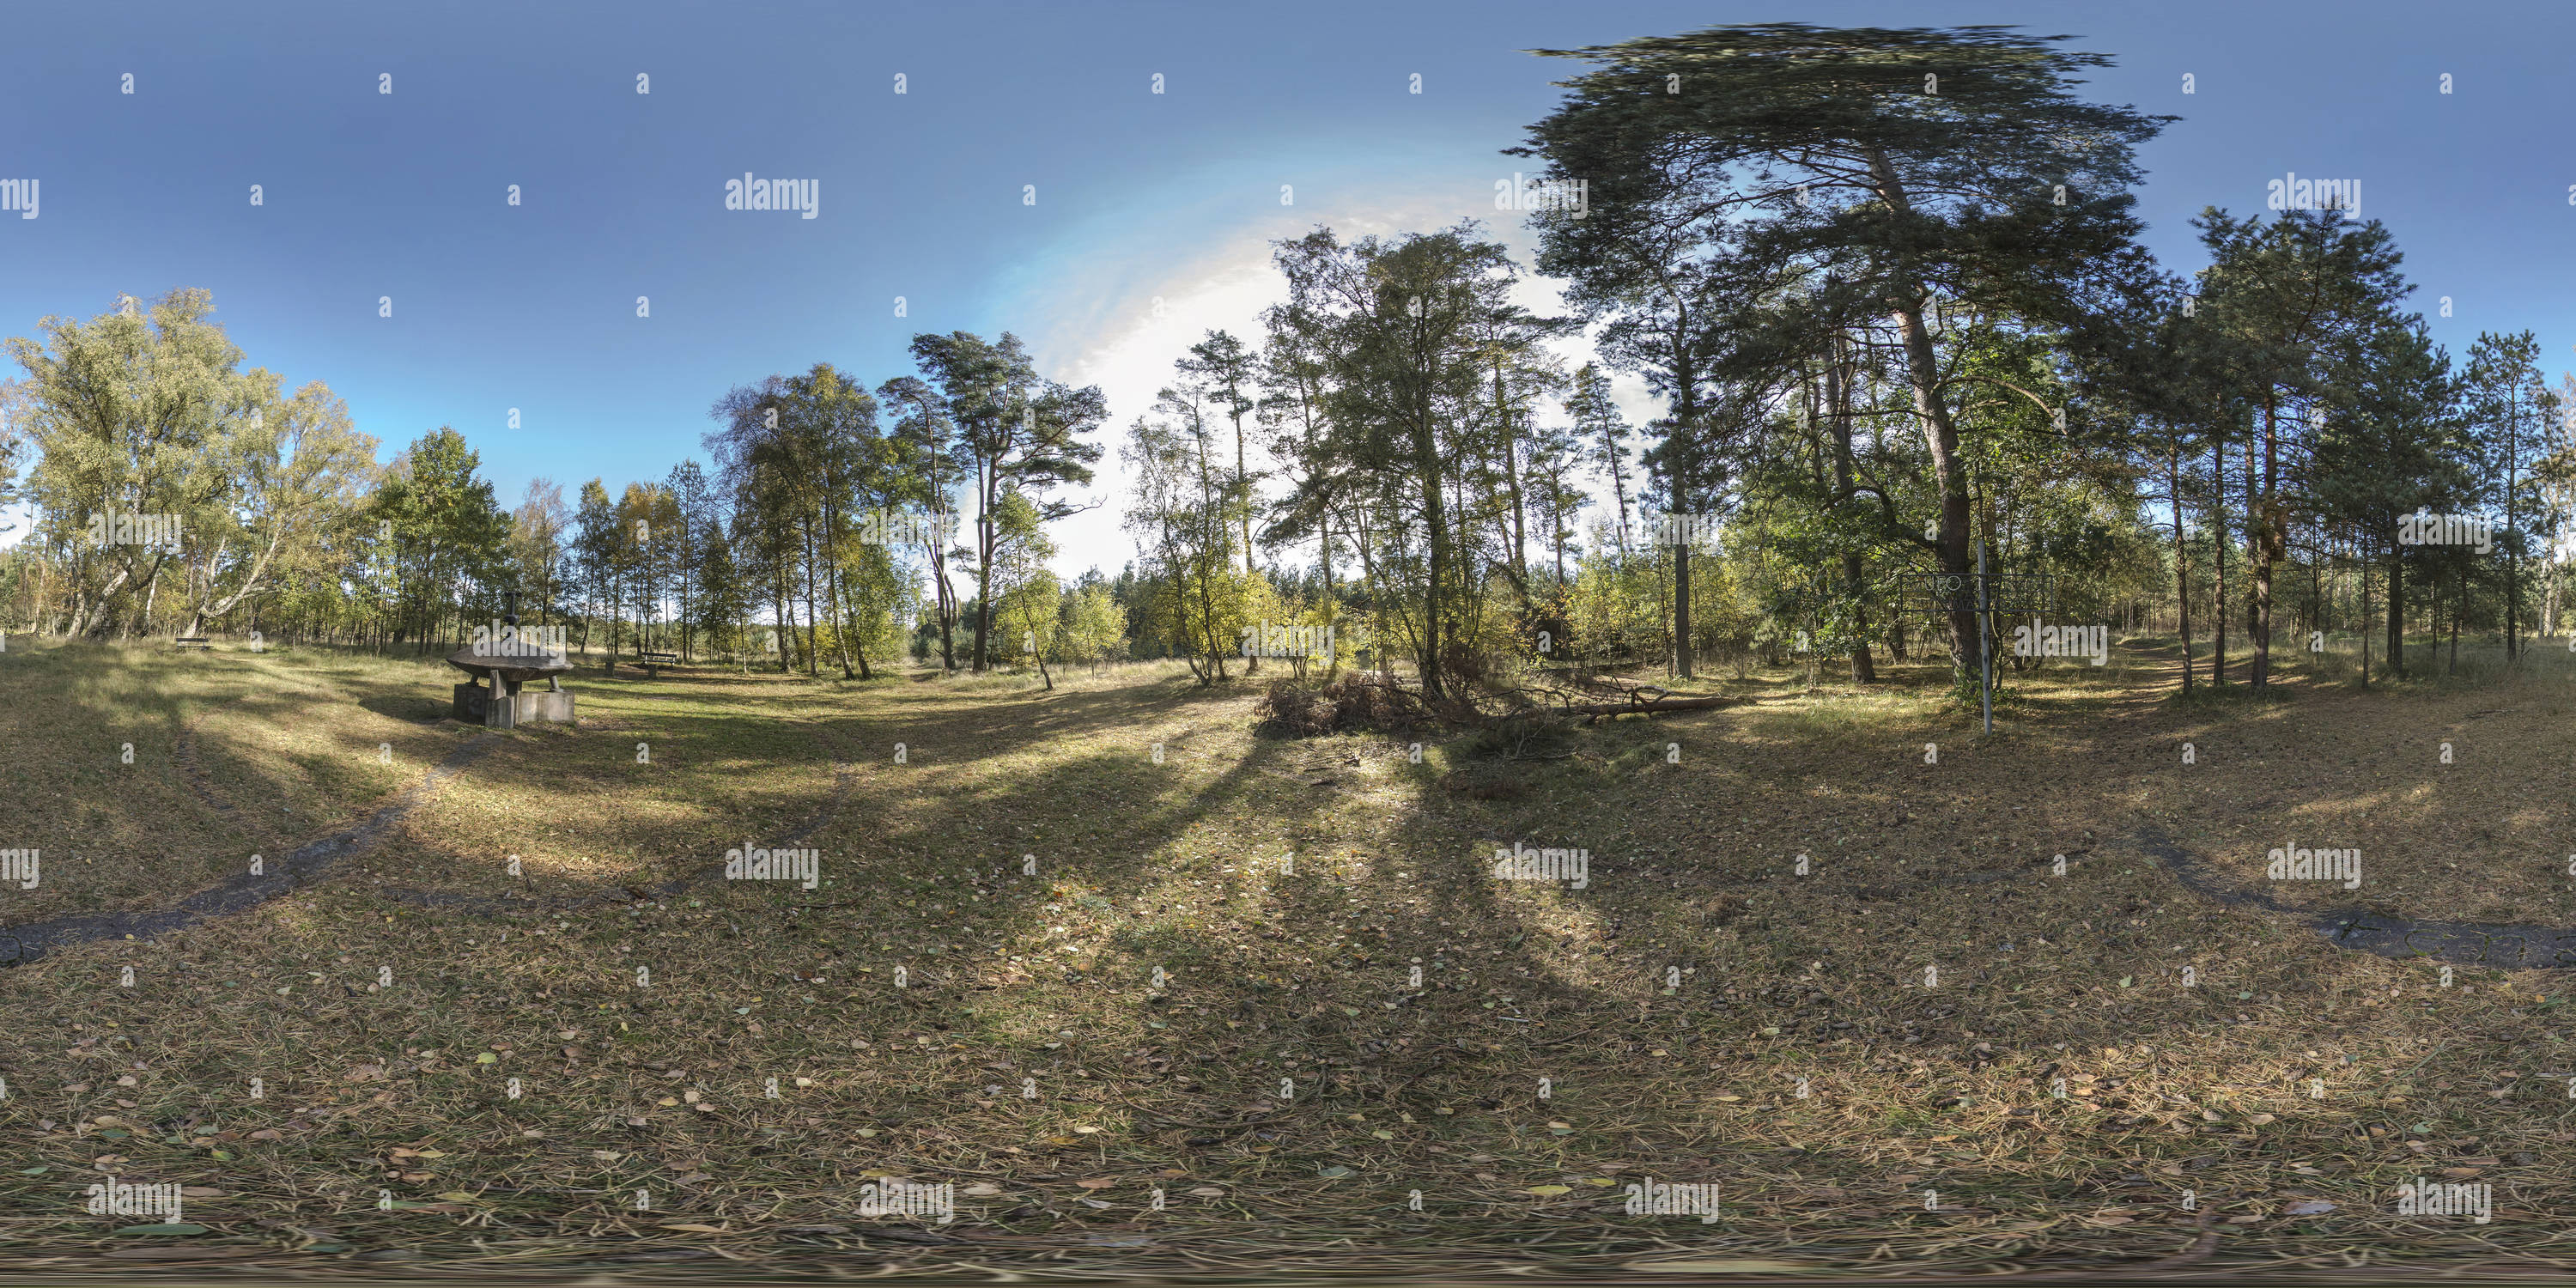 360 degree panoramic view of Ufo